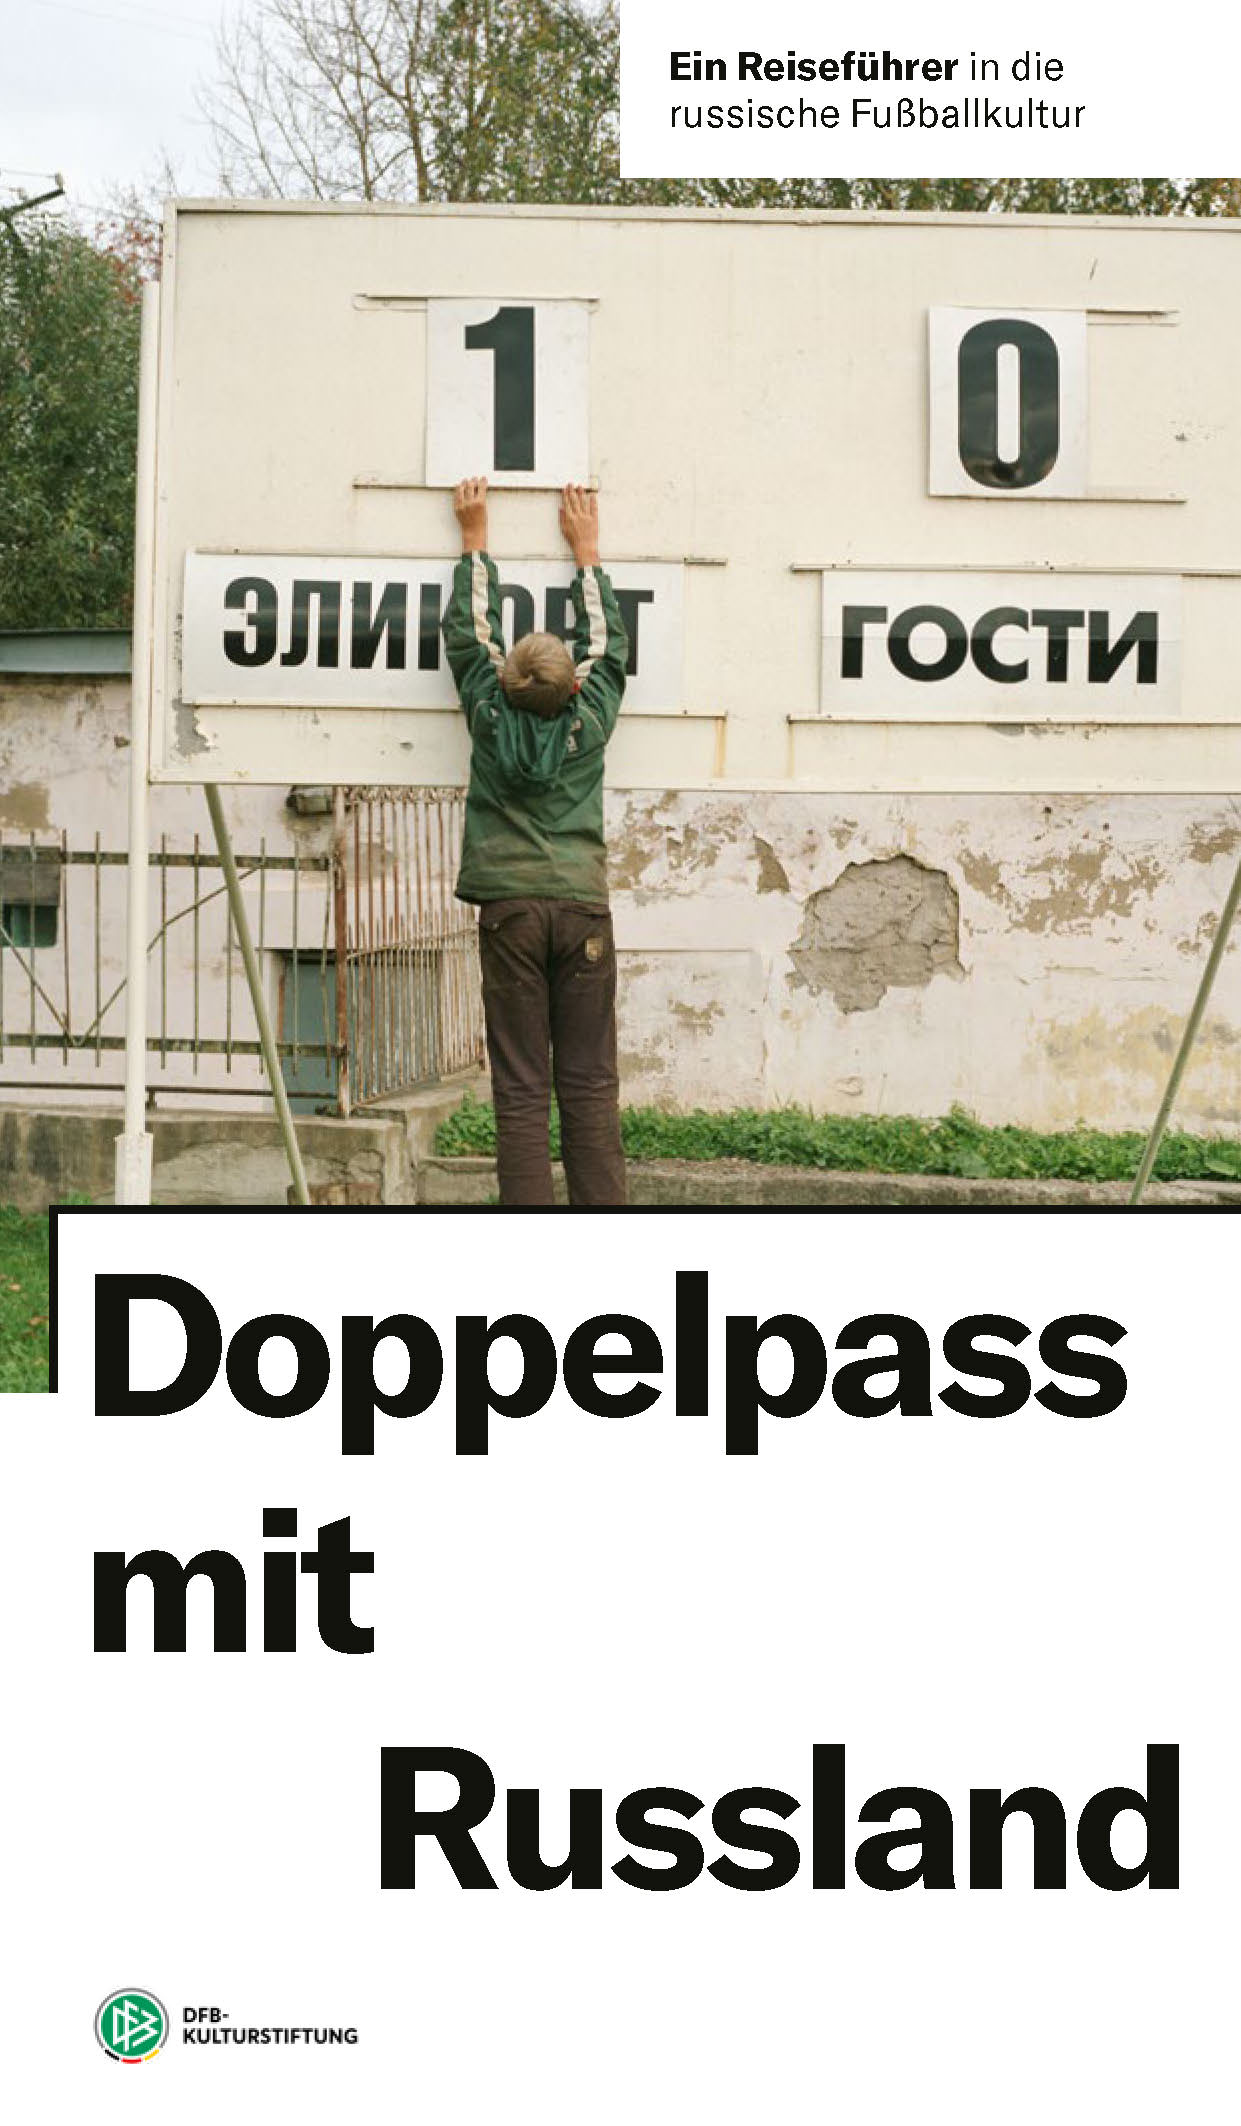 DFB Kulturstiftung (Hrsg.): Doppelpass mit Russland